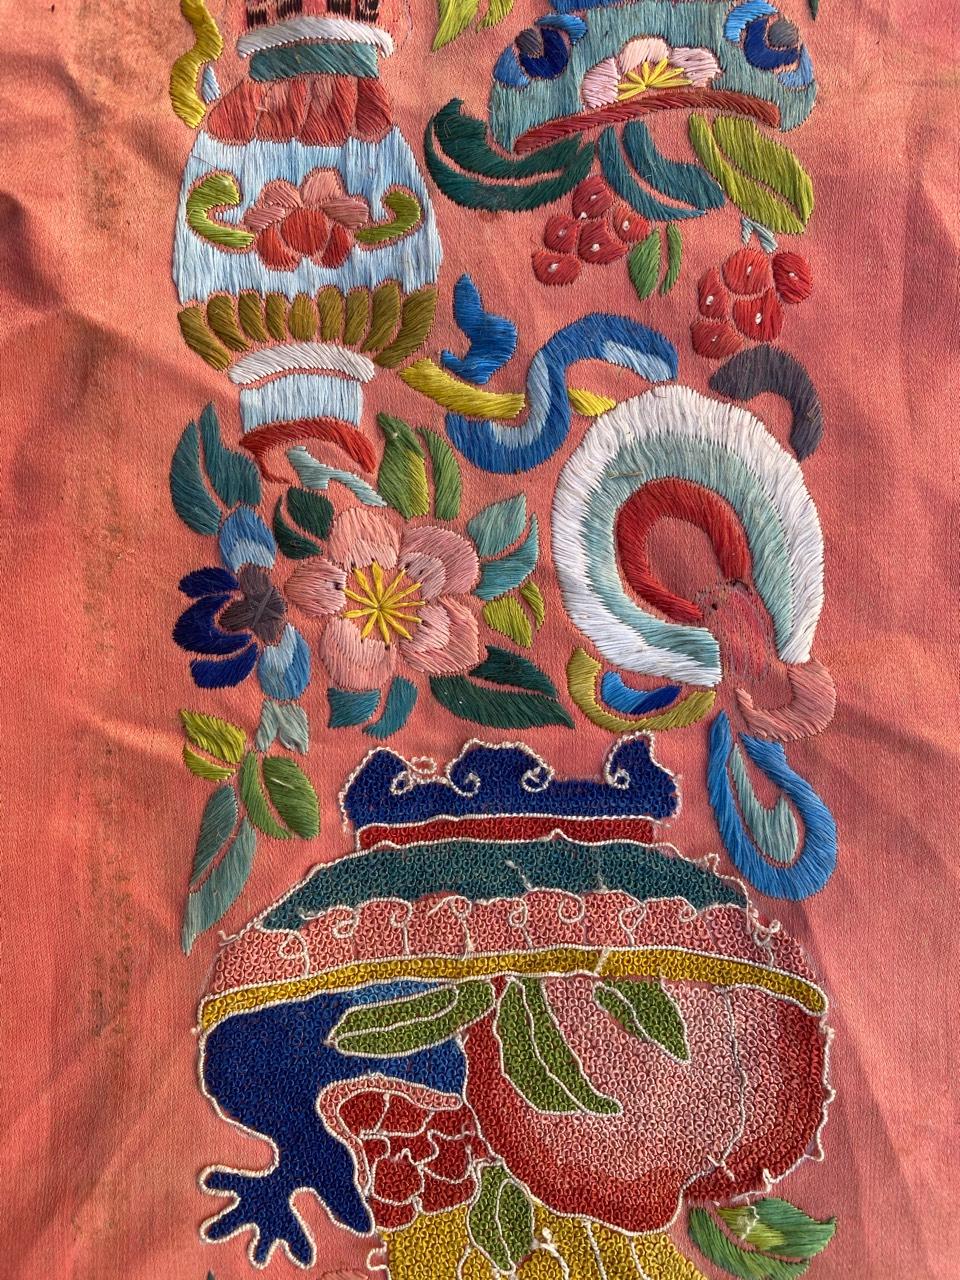 Belle broderie chinoise avec un joli motif floral et de belles couleurs, entièrement et finement brodée à la main avec de la soie sur une base de soie.
Taille : Largeur 17cm
Hauteur 88cm (seulement la partie broderie : 50cm).